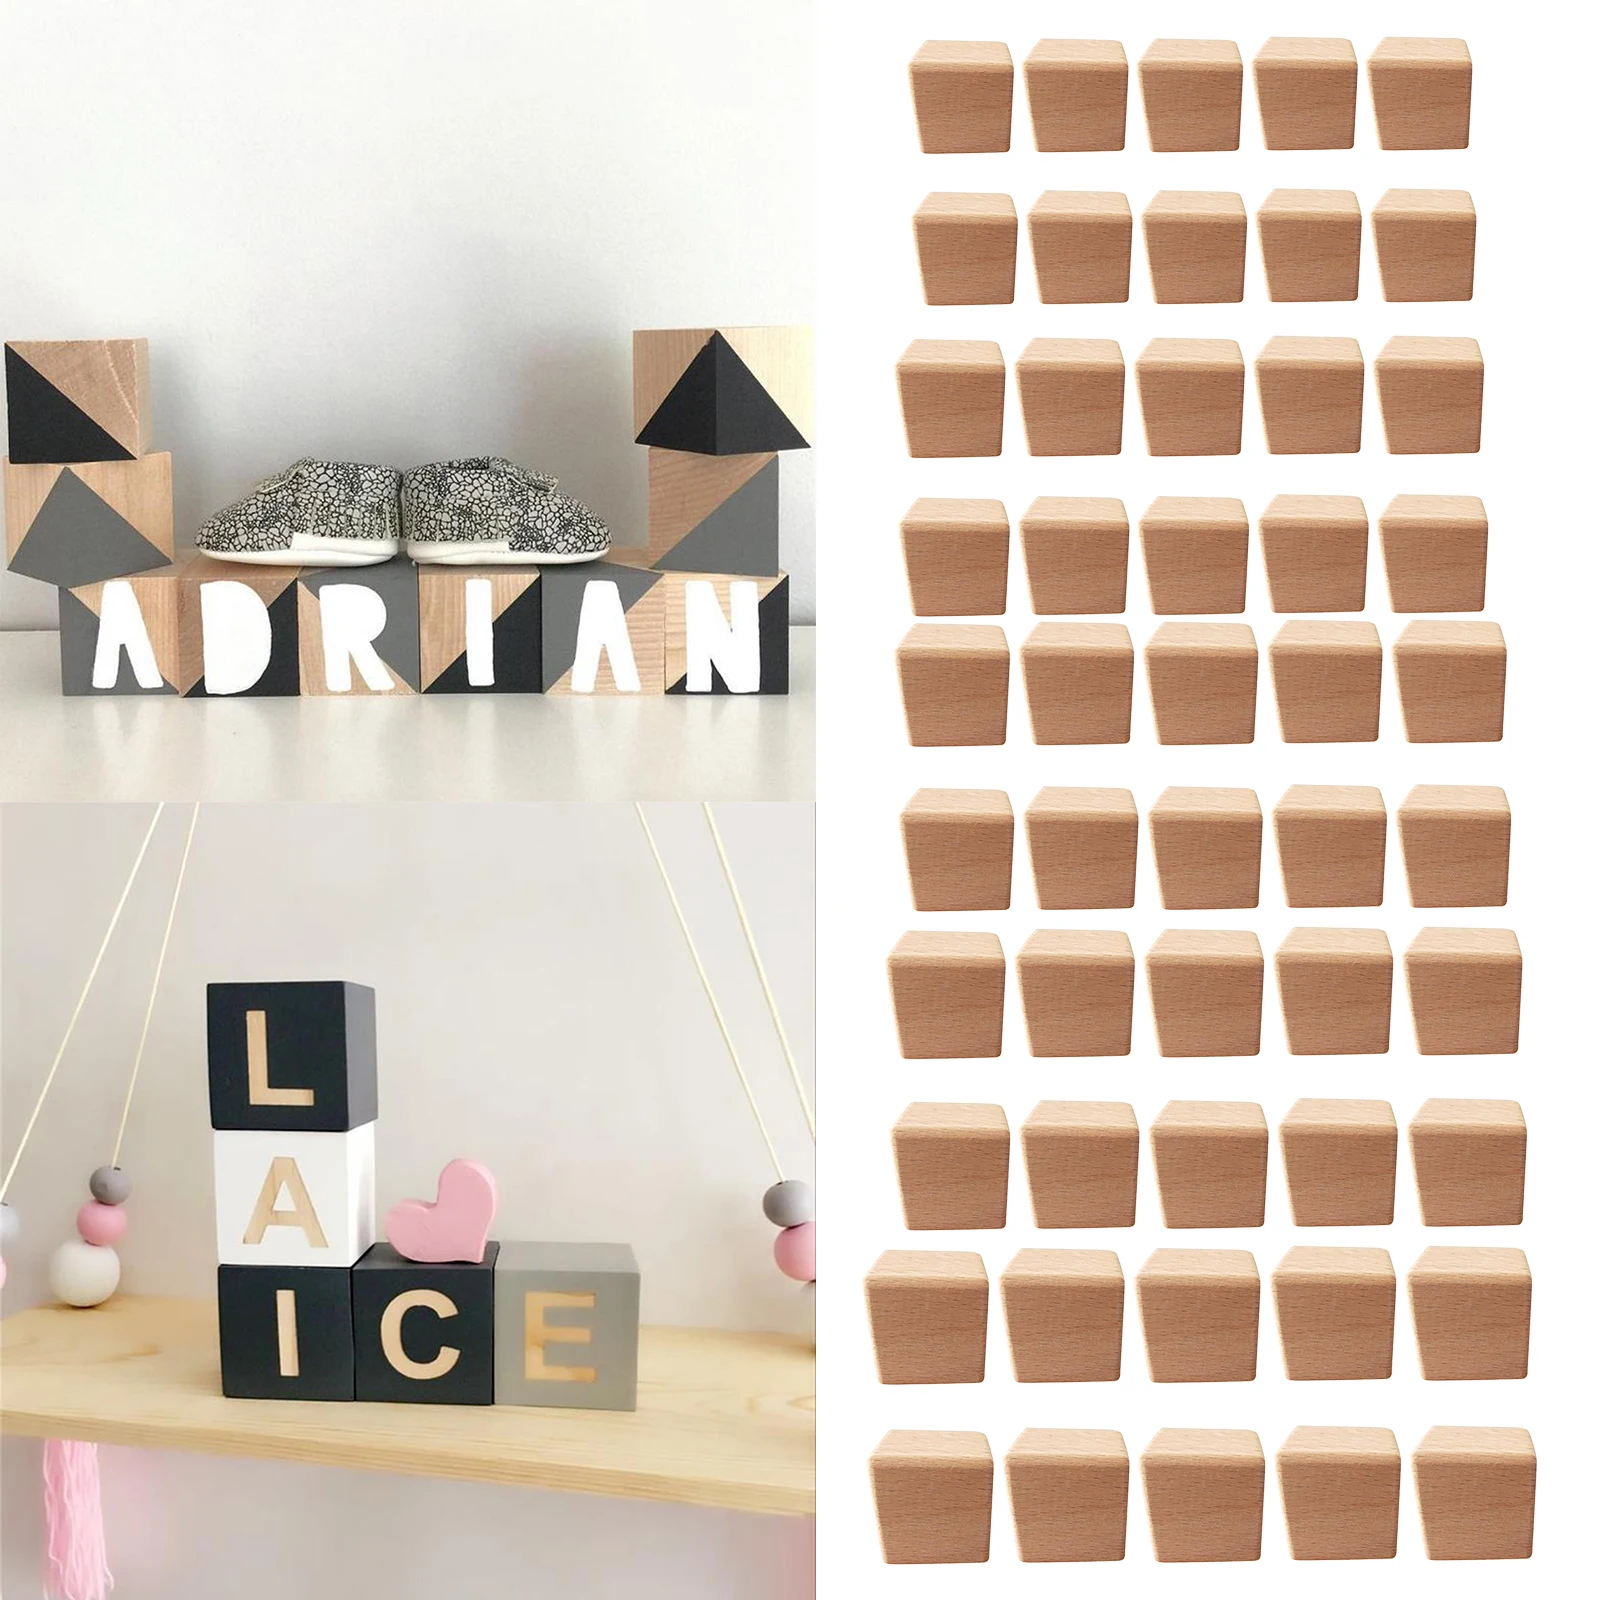 

Кубики из натурального дерева, квадратные деревянные кубики необработанной формы для хобби, изготовление моделей, 10 шт.